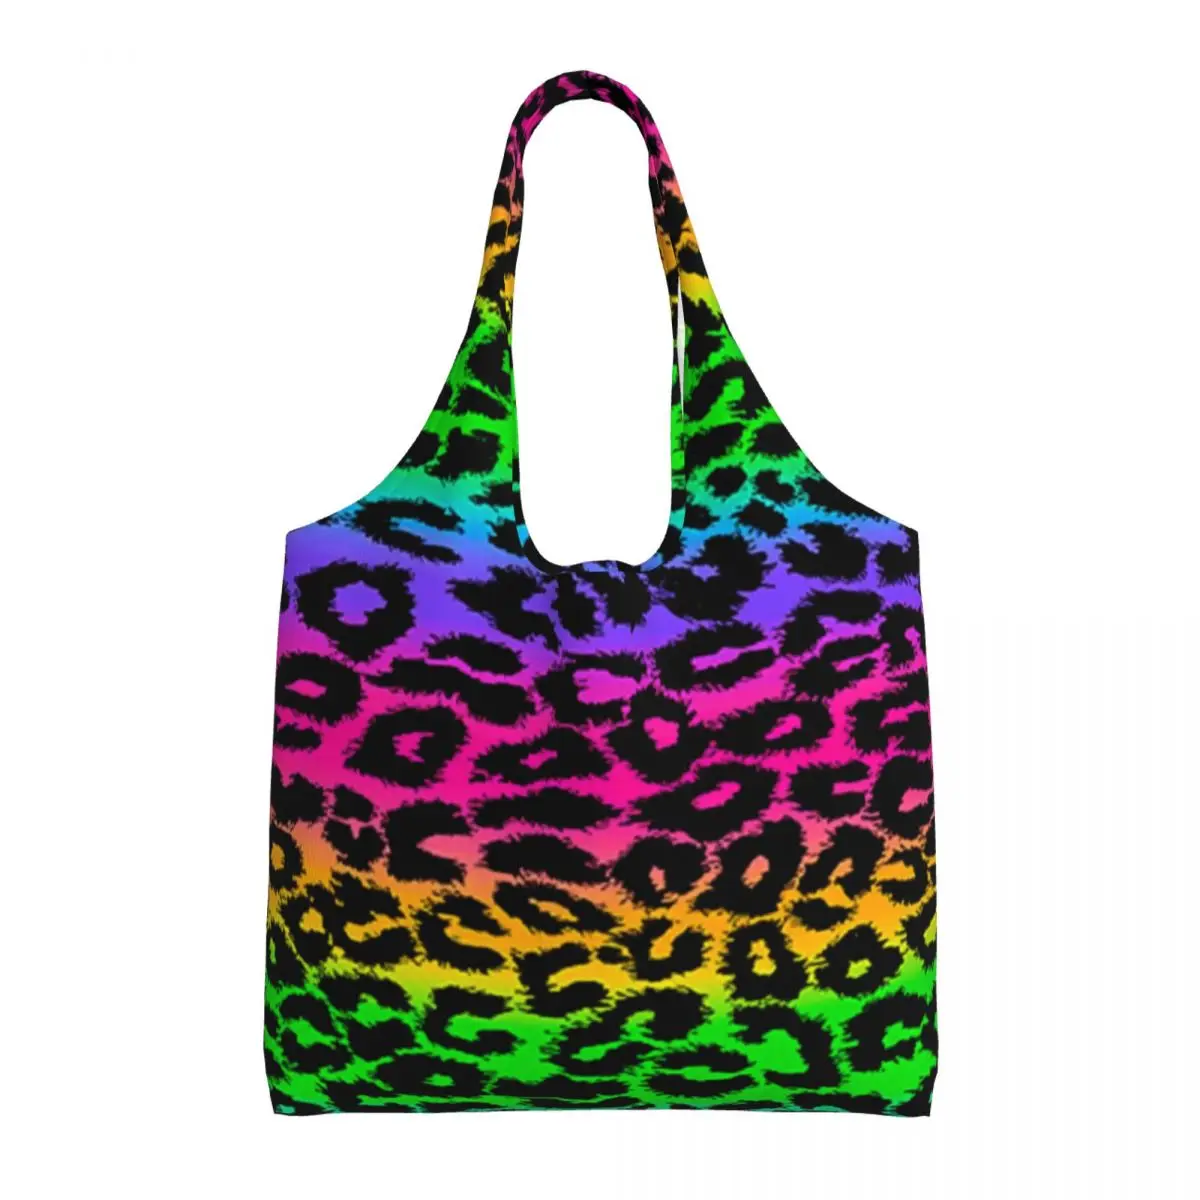 

Сумка для покупок в стиле ретро 80-х с радужным леопардовым принтом, школьная сумка для учеников, модные эстетические сумки из полиэстера